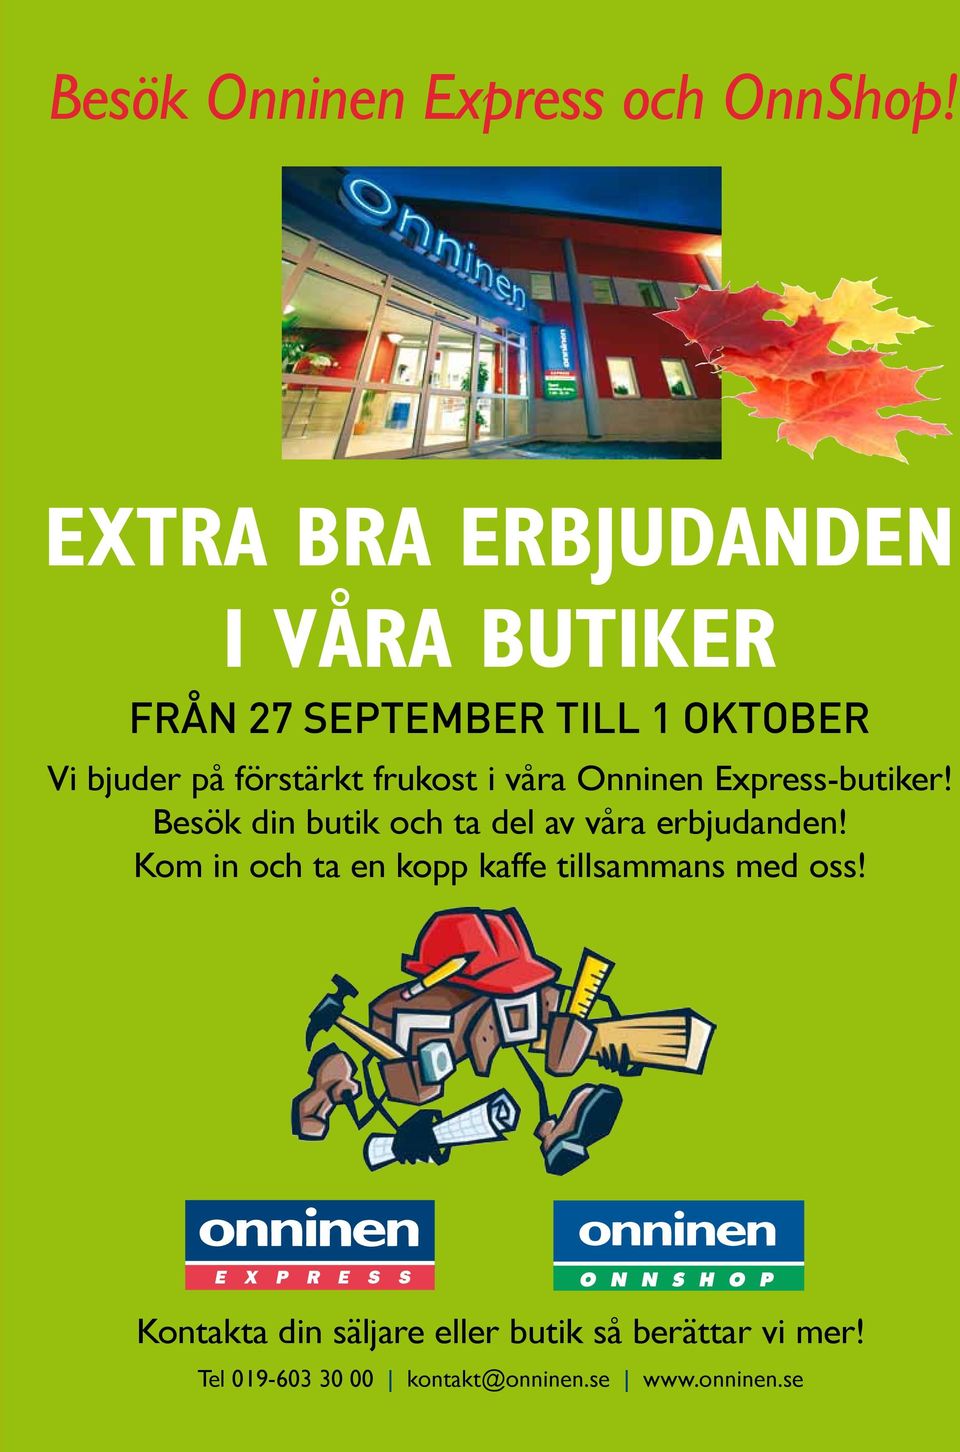 frukost i våra Onninen Express-butiker! Besök din butik och ta del av våra erbjudanden!